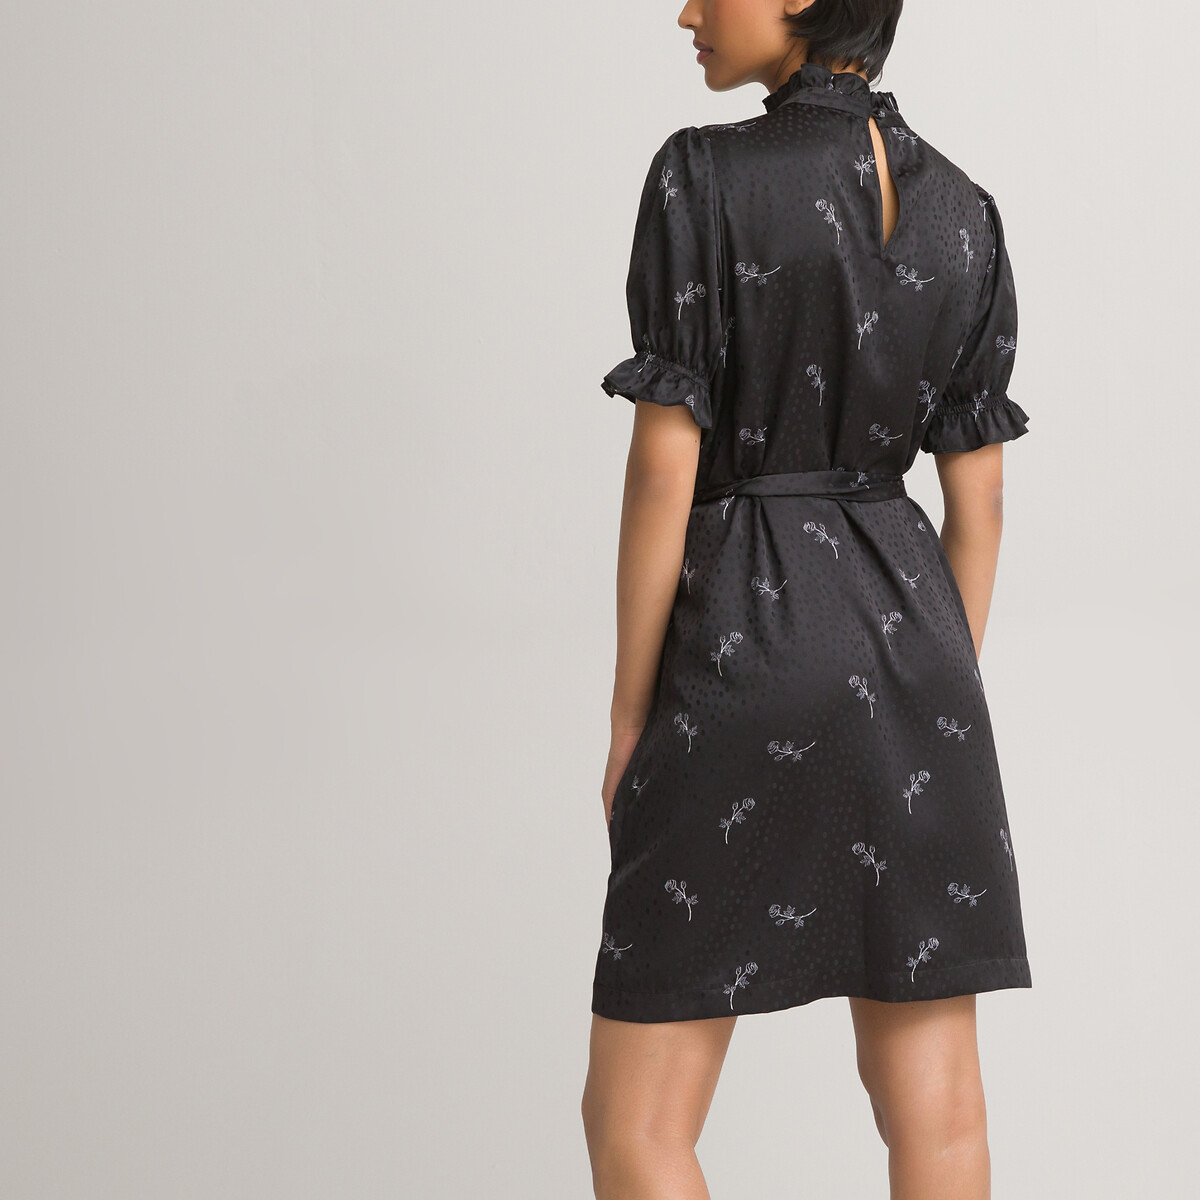 Платье LaRedoute С воротником-стойкой короткие рукава из сатина с принтом 40 черный, размер 40 - фото 4